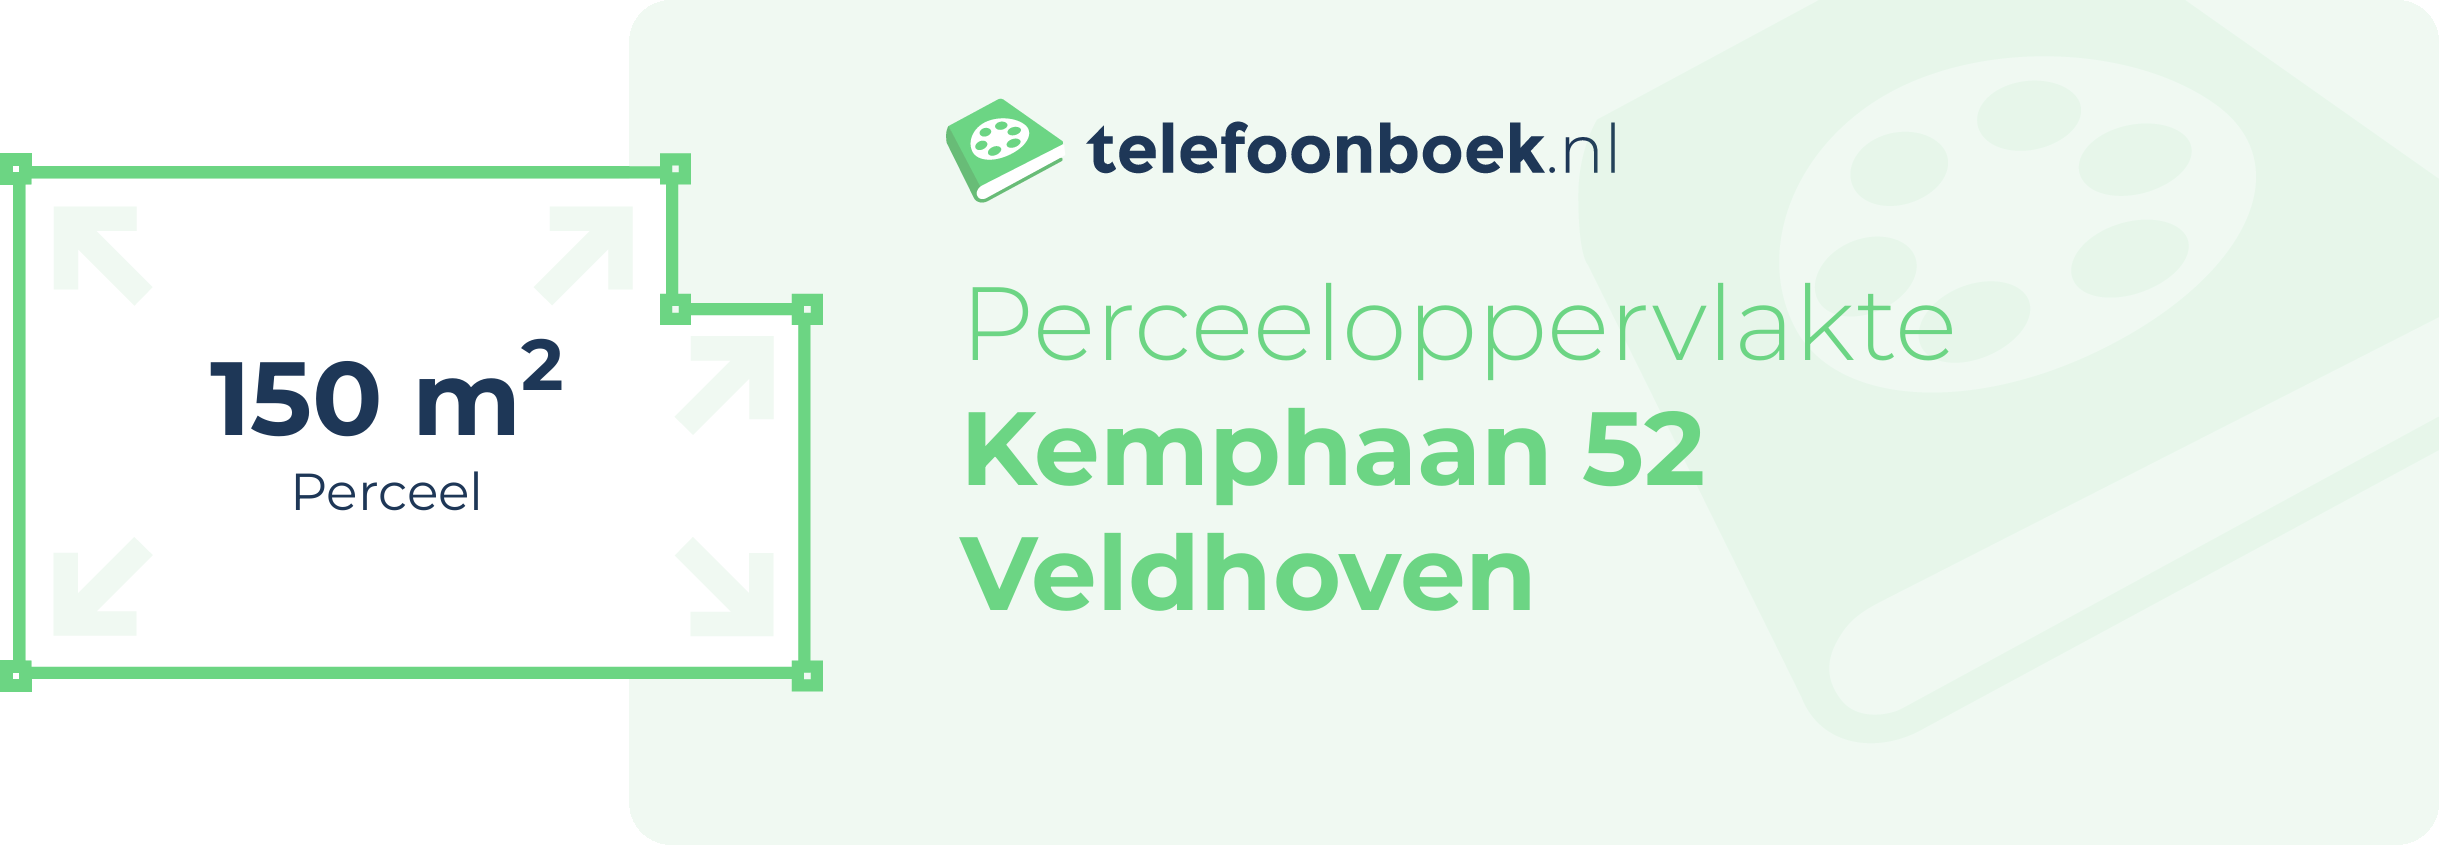 Perceeloppervlakte Kemphaan 52 Veldhoven